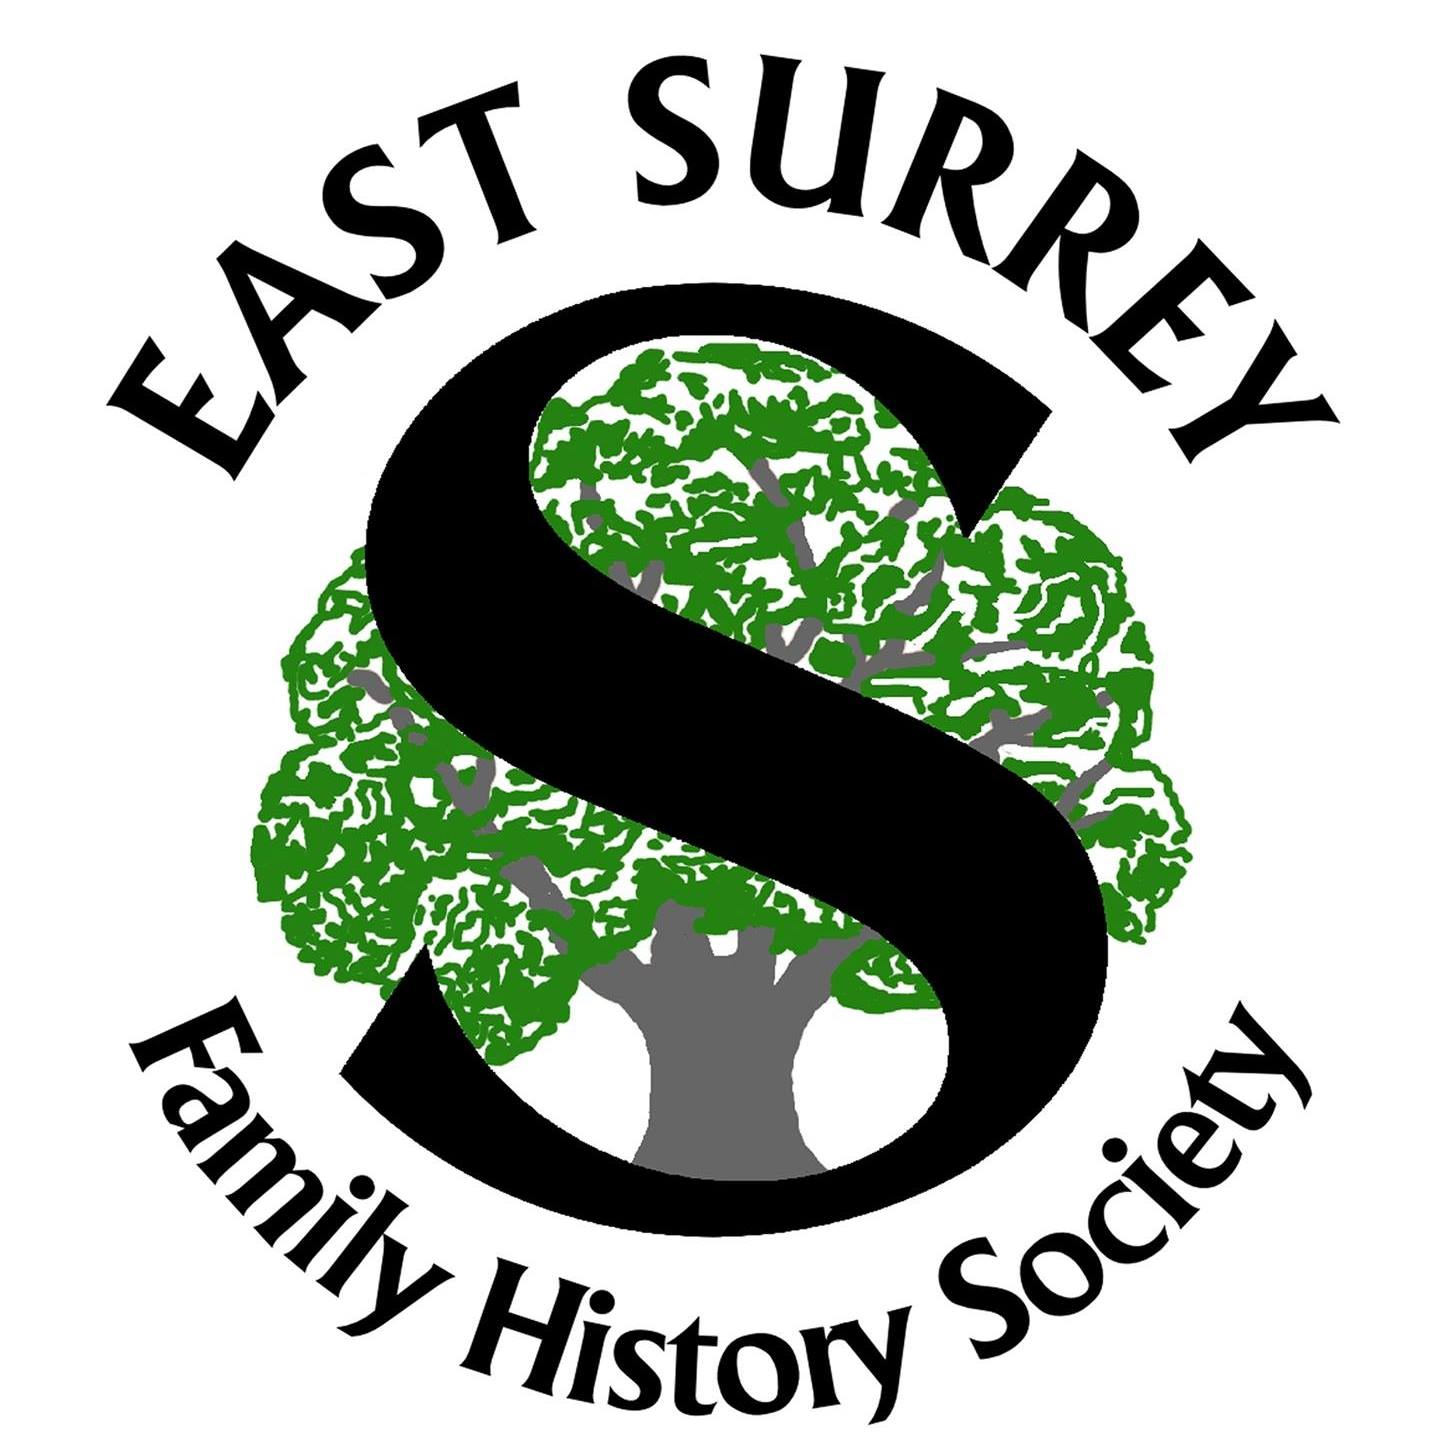 East Surrey Family History Society